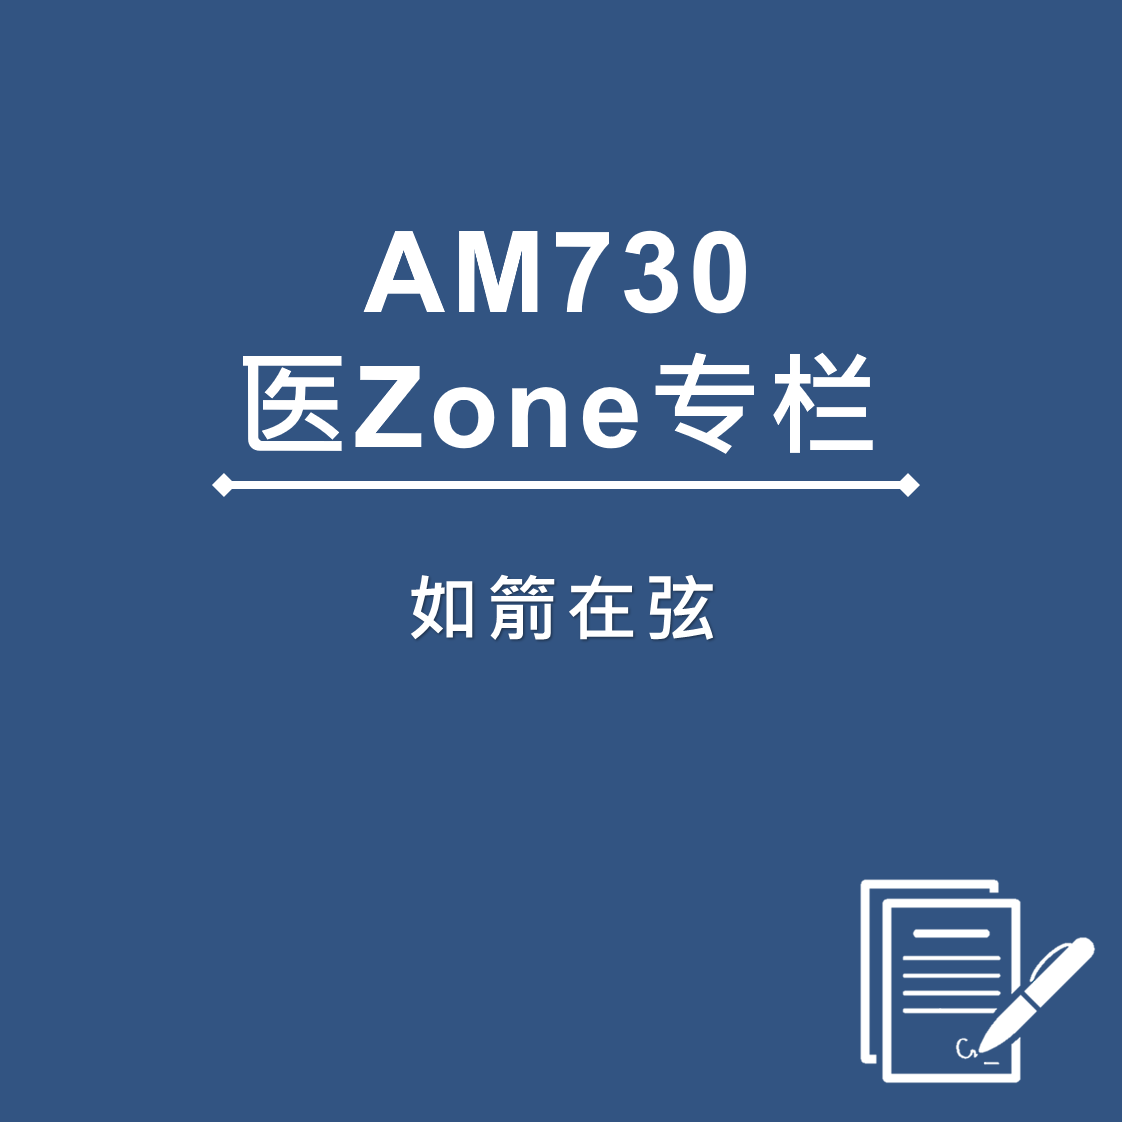 AM730 医Zone 专栏 - 如箭在弦